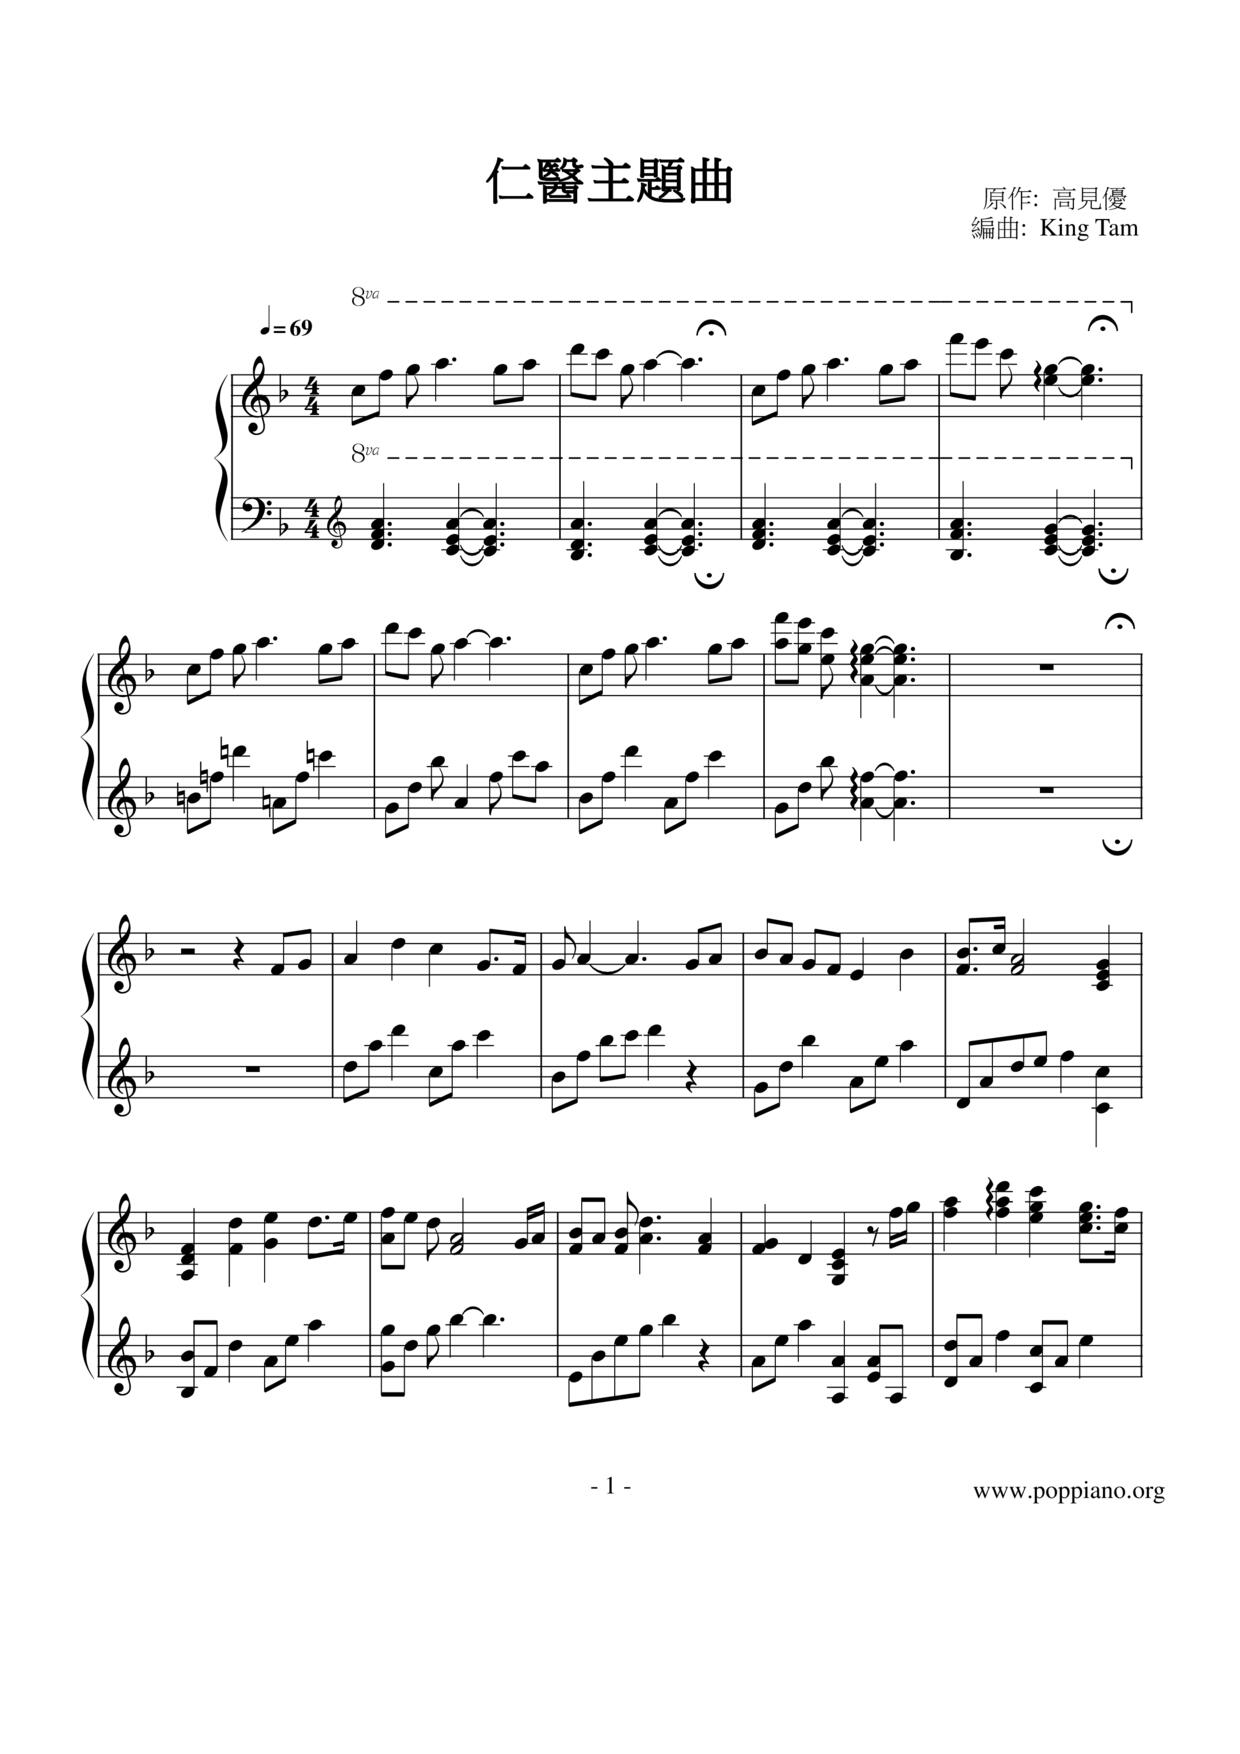 Renyi Theme Song Score